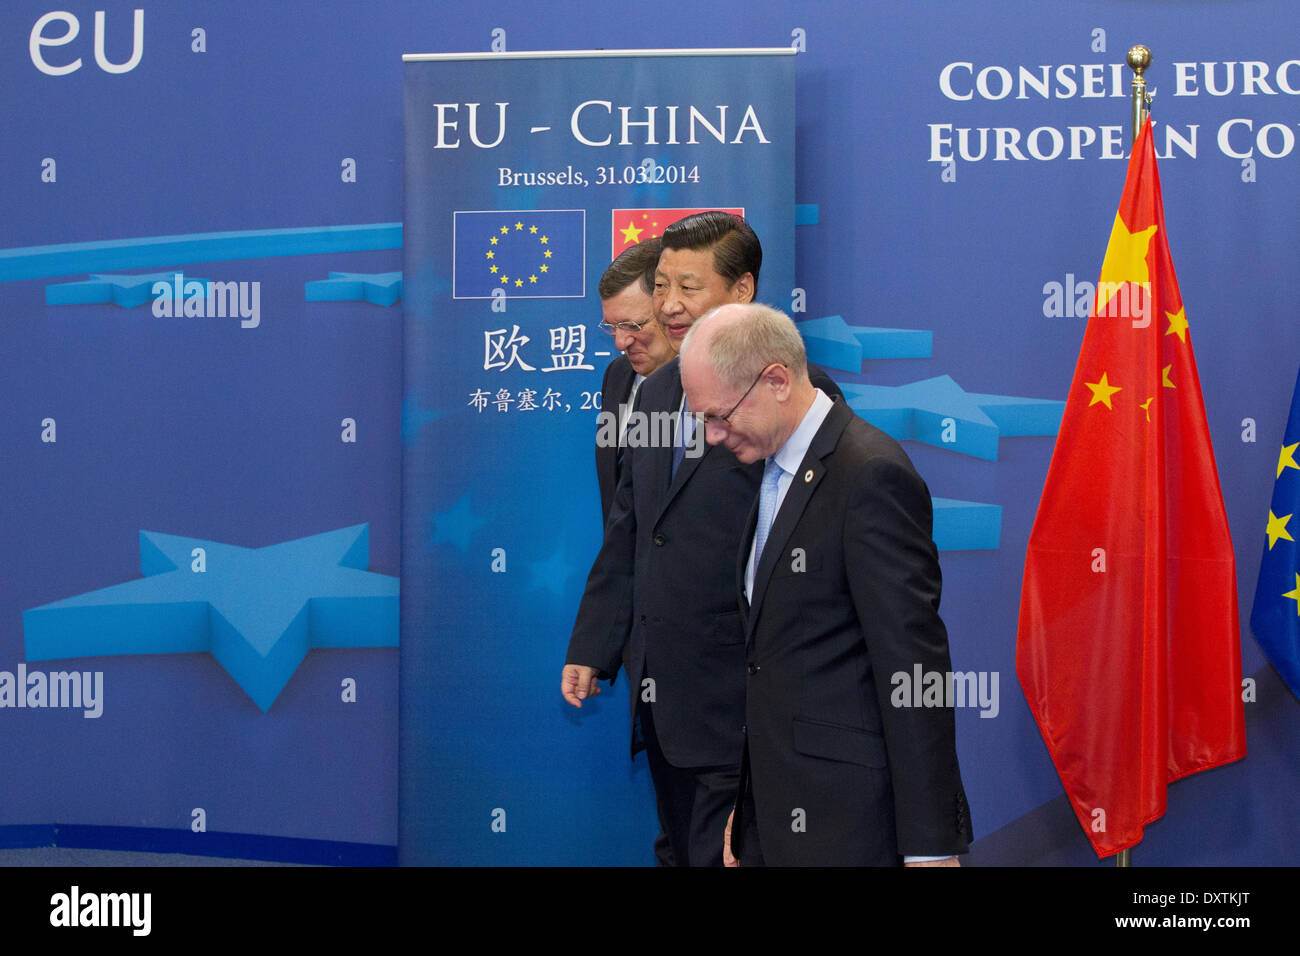 Brüssel, Belgien. 31. März 2014. Bei seinem Besuch in den europäischen Institutionen in Brüssel abgebildet war Präsident Xi Jinping der Volksrepublik China mit (links) Barroso, Präsident der Europäischen Kommission und (rechts) Herman Van Rompuy, Präsident des Europäischen Rates. Stockfoto